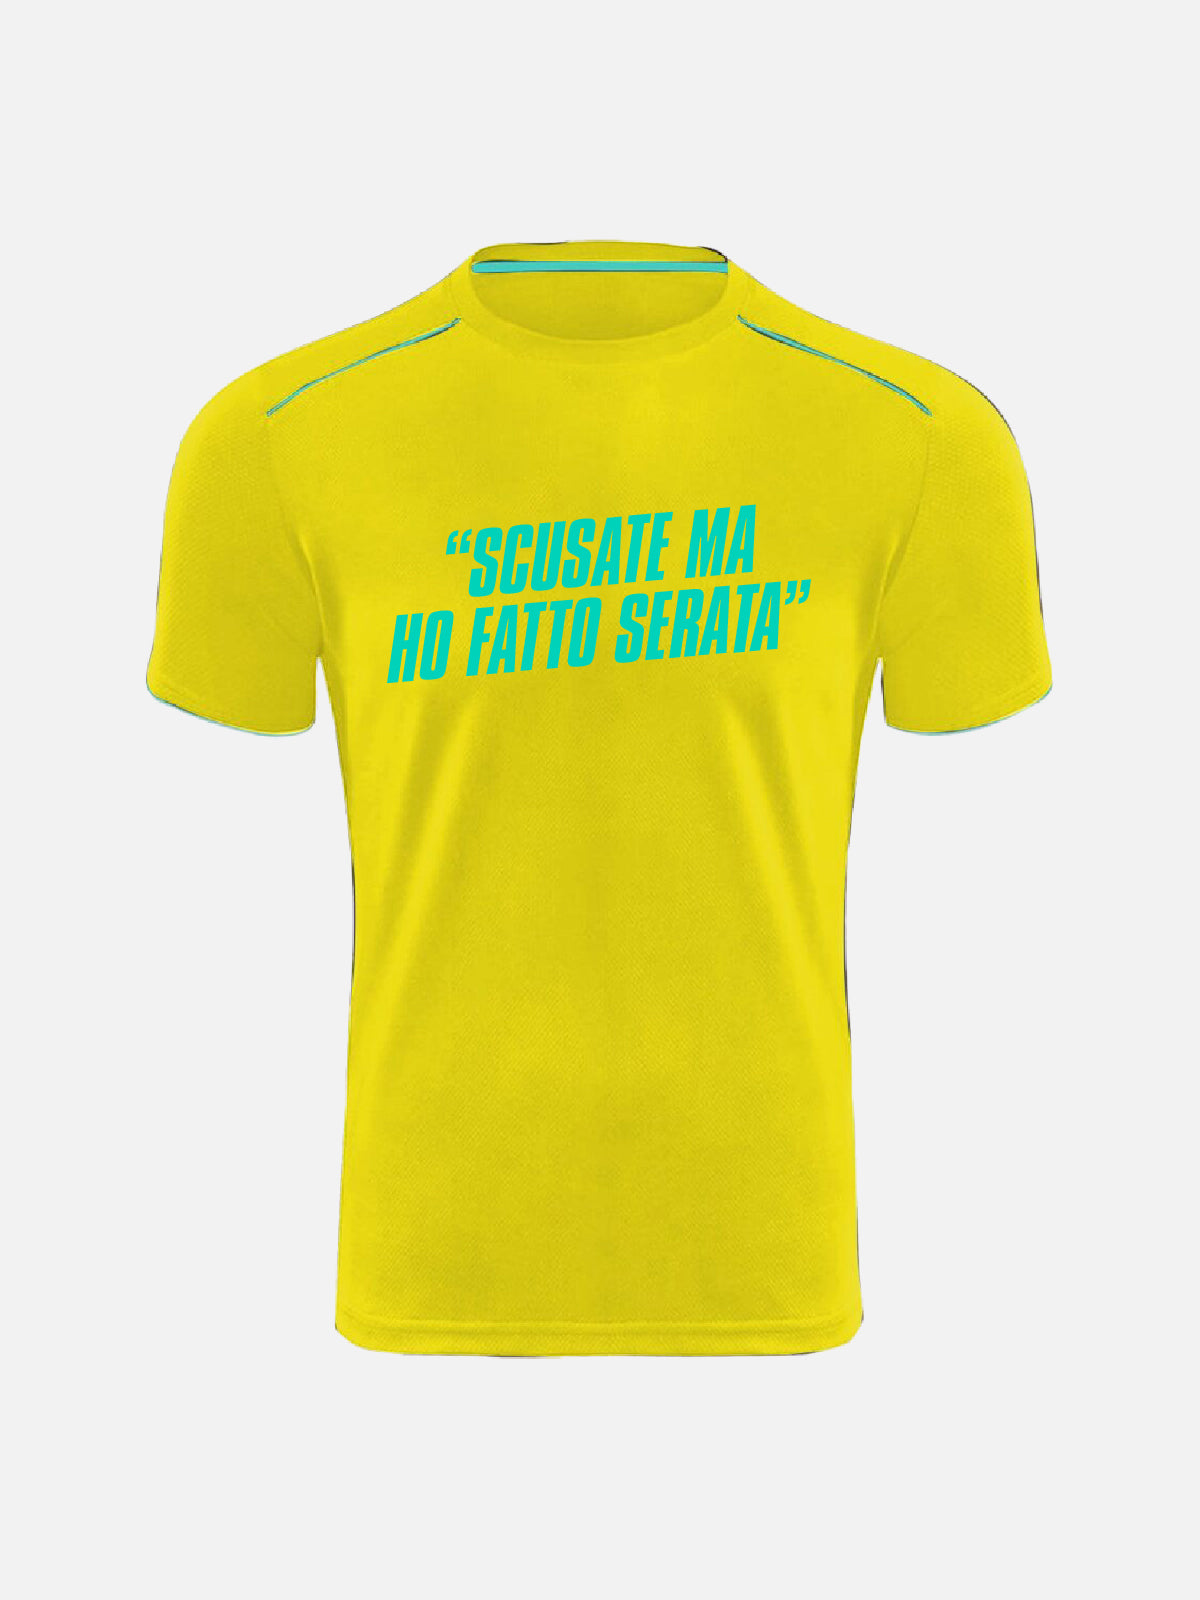 T-shirt Personalizzata - "Scusate Ma Ho Fatto Serata"